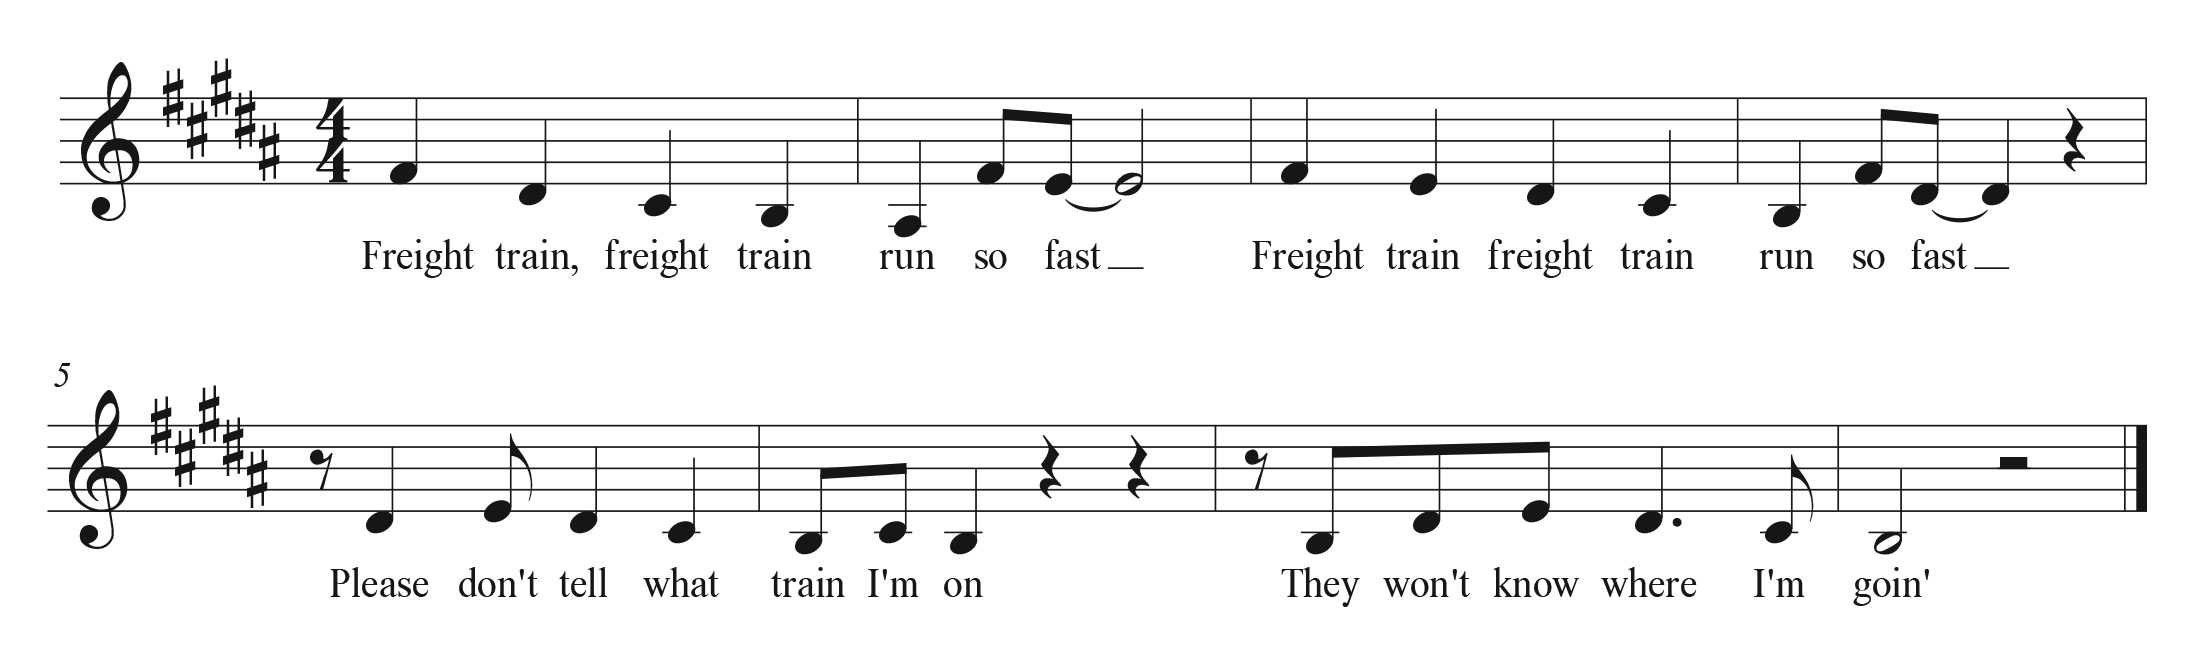 List of train songs - Wikipedia